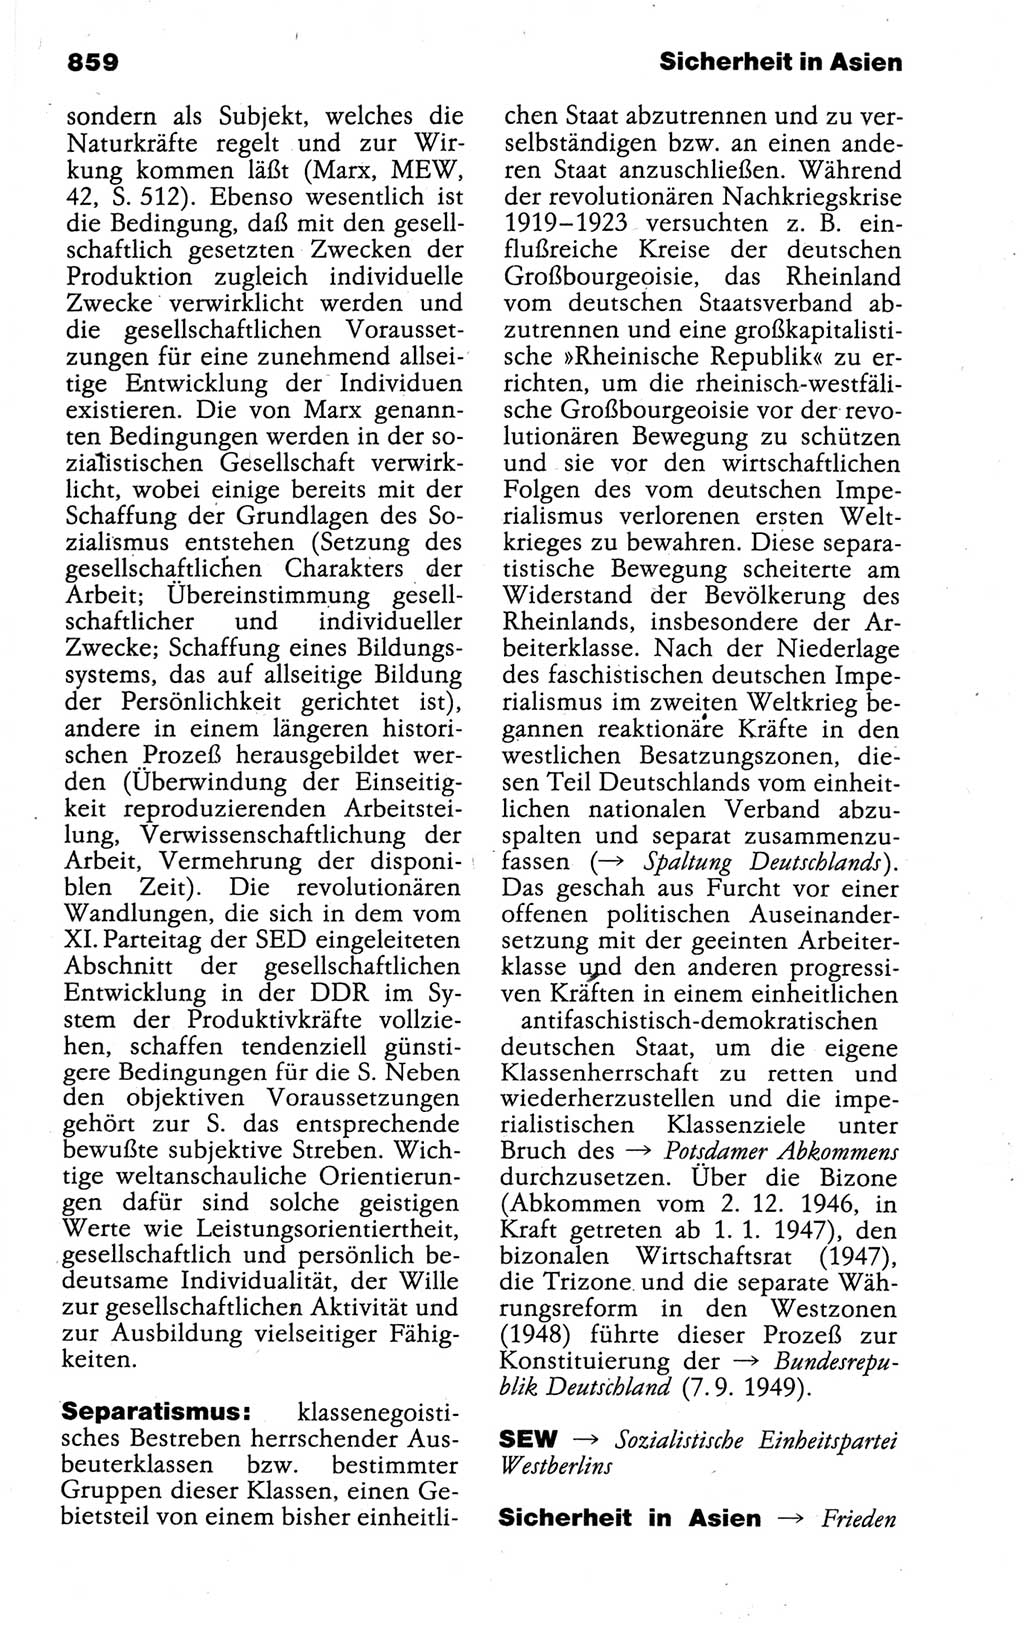 Kleines politisches Wörterbuch [Deutsche Demokratische Republik (DDR)] 1988, Seite 859 (Kl. pol. Wb. DDR 1988, S. 859)